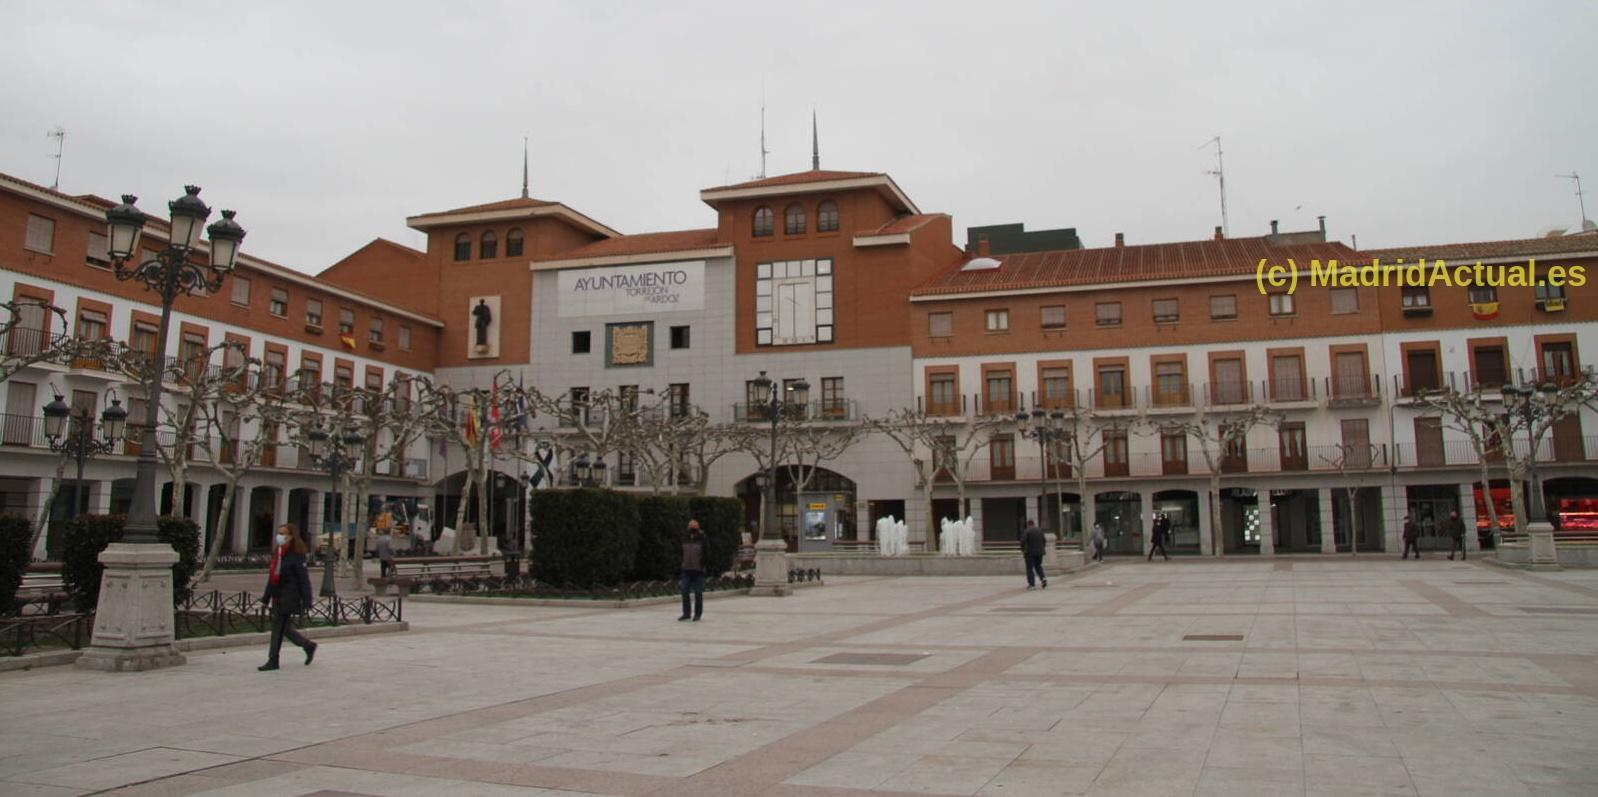 Abierta la inscripción para el VII Certamen de Fotografía Ciudad de Torrejón de Ardoz